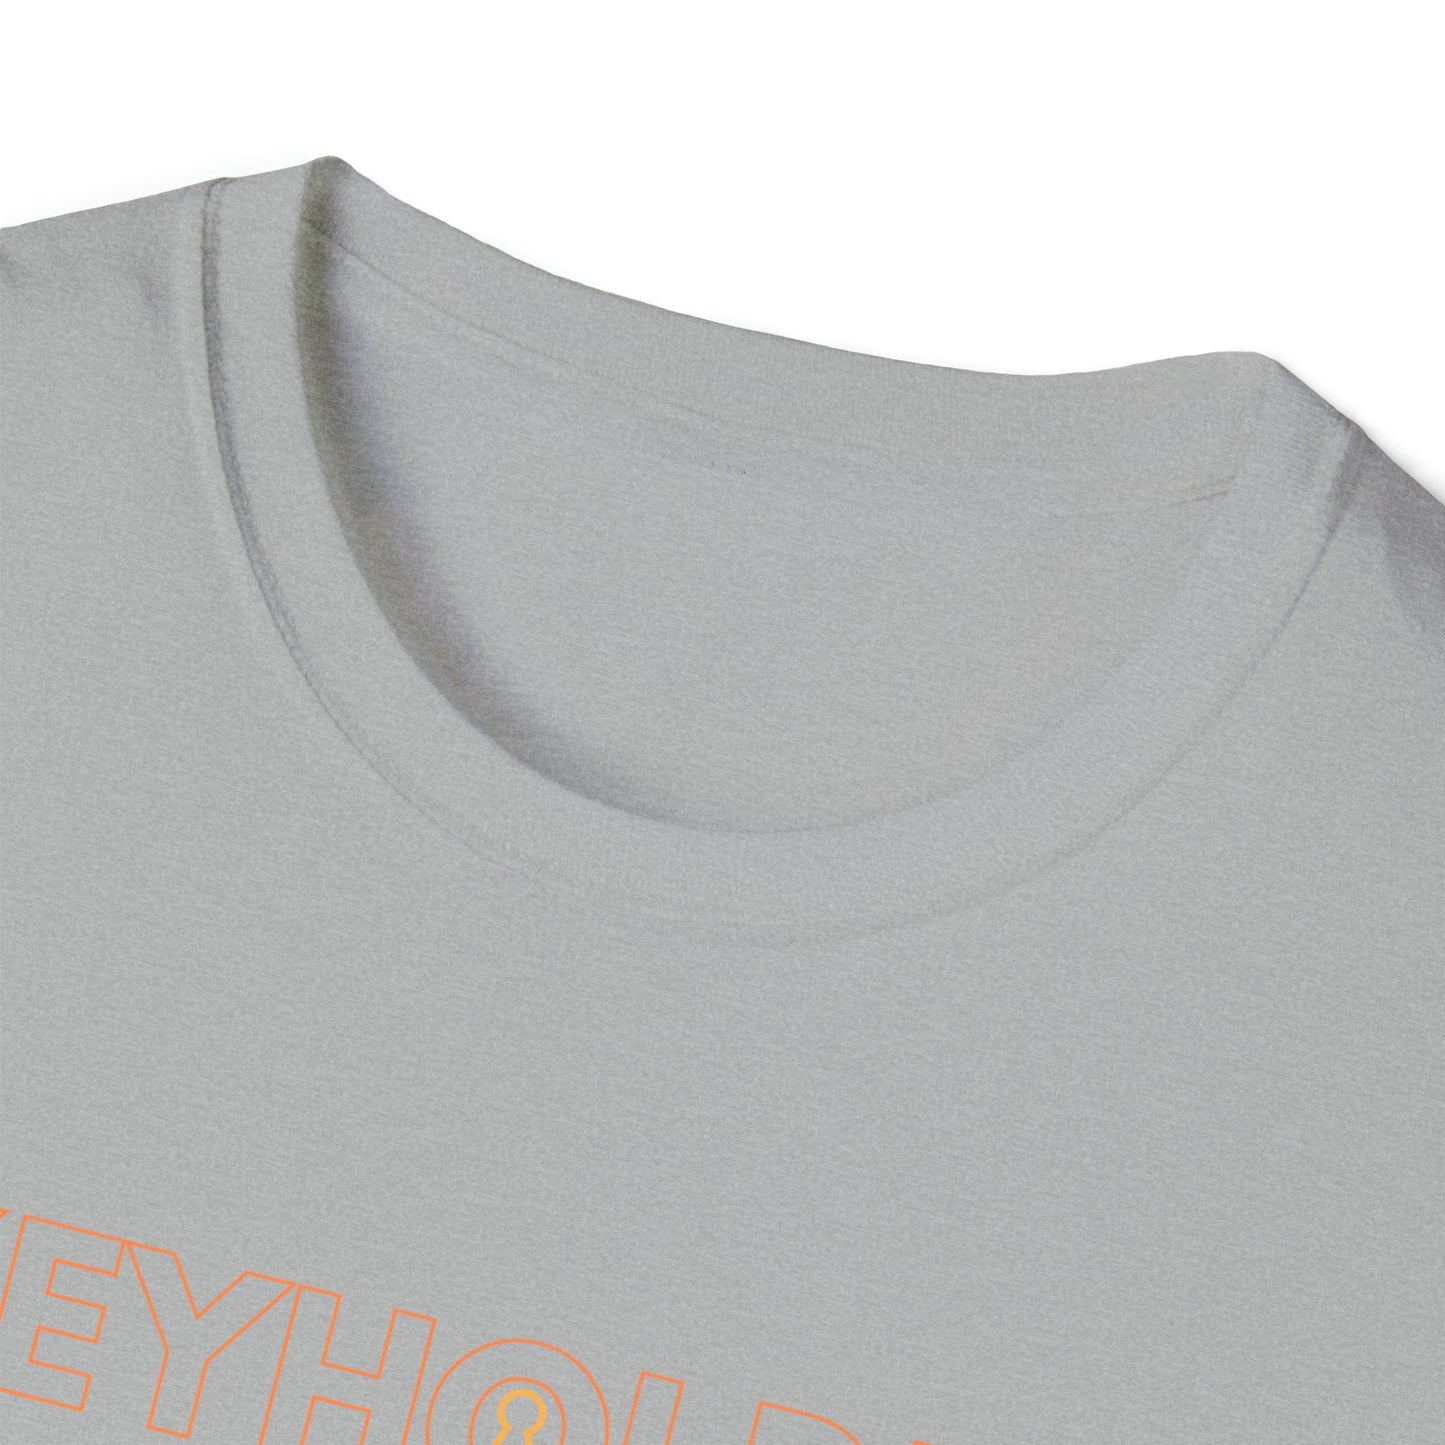 T-Shirt KEYHOLDER bag Inspo - Chastity Shirts by LockedBoy Athletic LEATHERDADDY BATOR